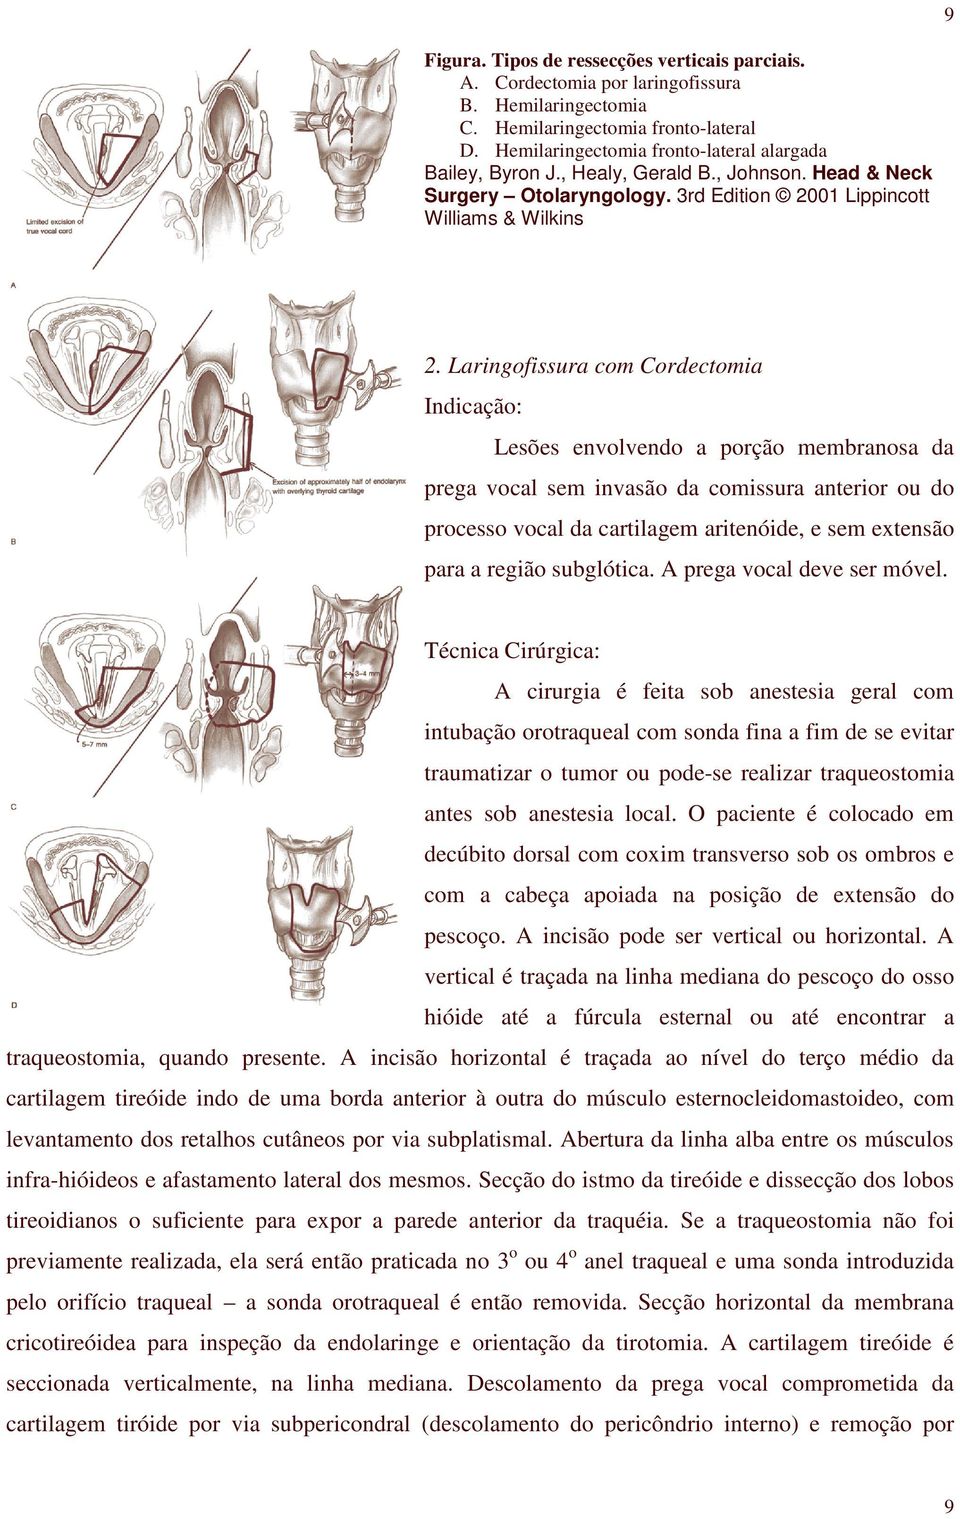 Laringofissura com Cordectomia Indicação: Lesões envolvendo a porção membranosa da prega vocal sem invasão da comissura anterior ou do processo vocal da cartilagem aritenóide, e sem extensão para a